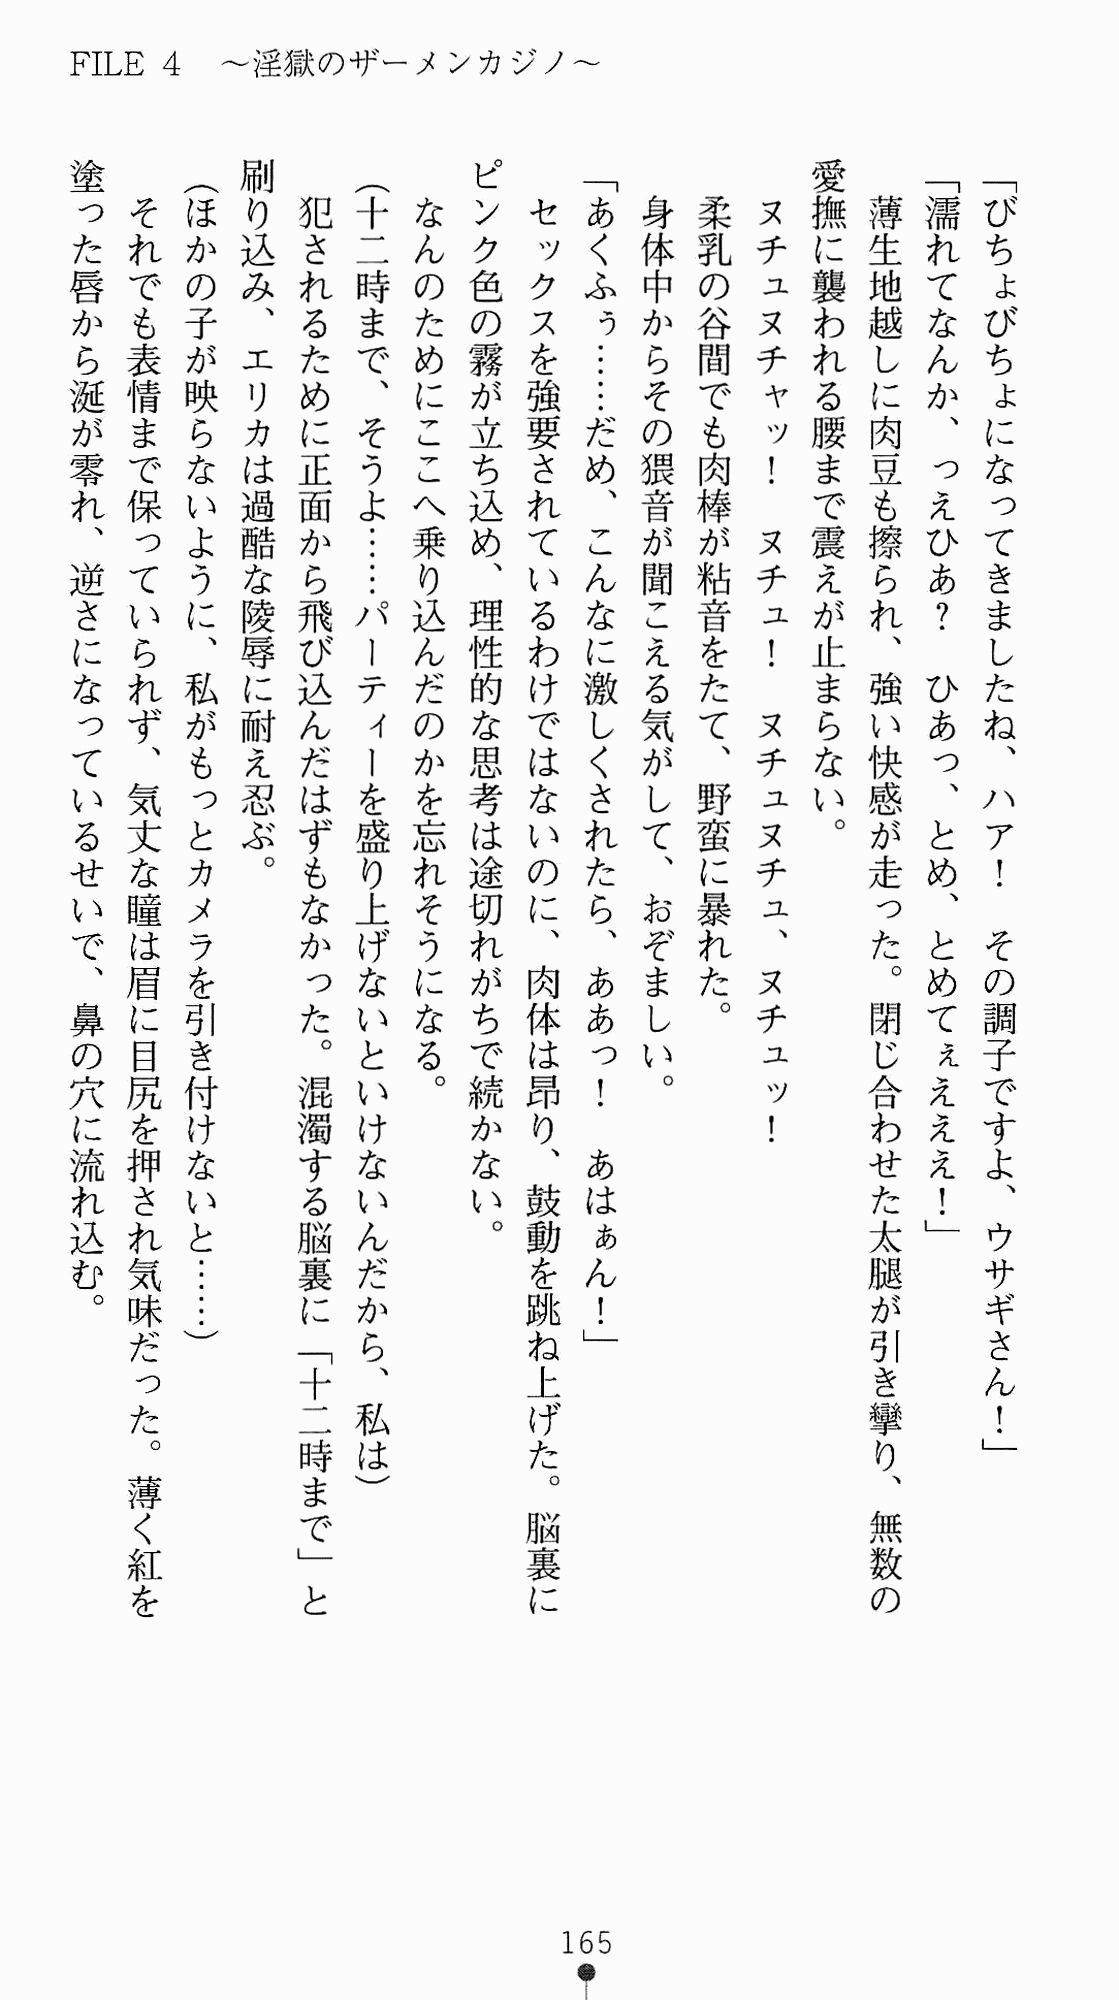 [Kagura Youko, Takahama Tarou] Shiritsu Tantei Takasuga Erika no Jikenbo 2 - Chijouha AV Satsuei 24-ji 180